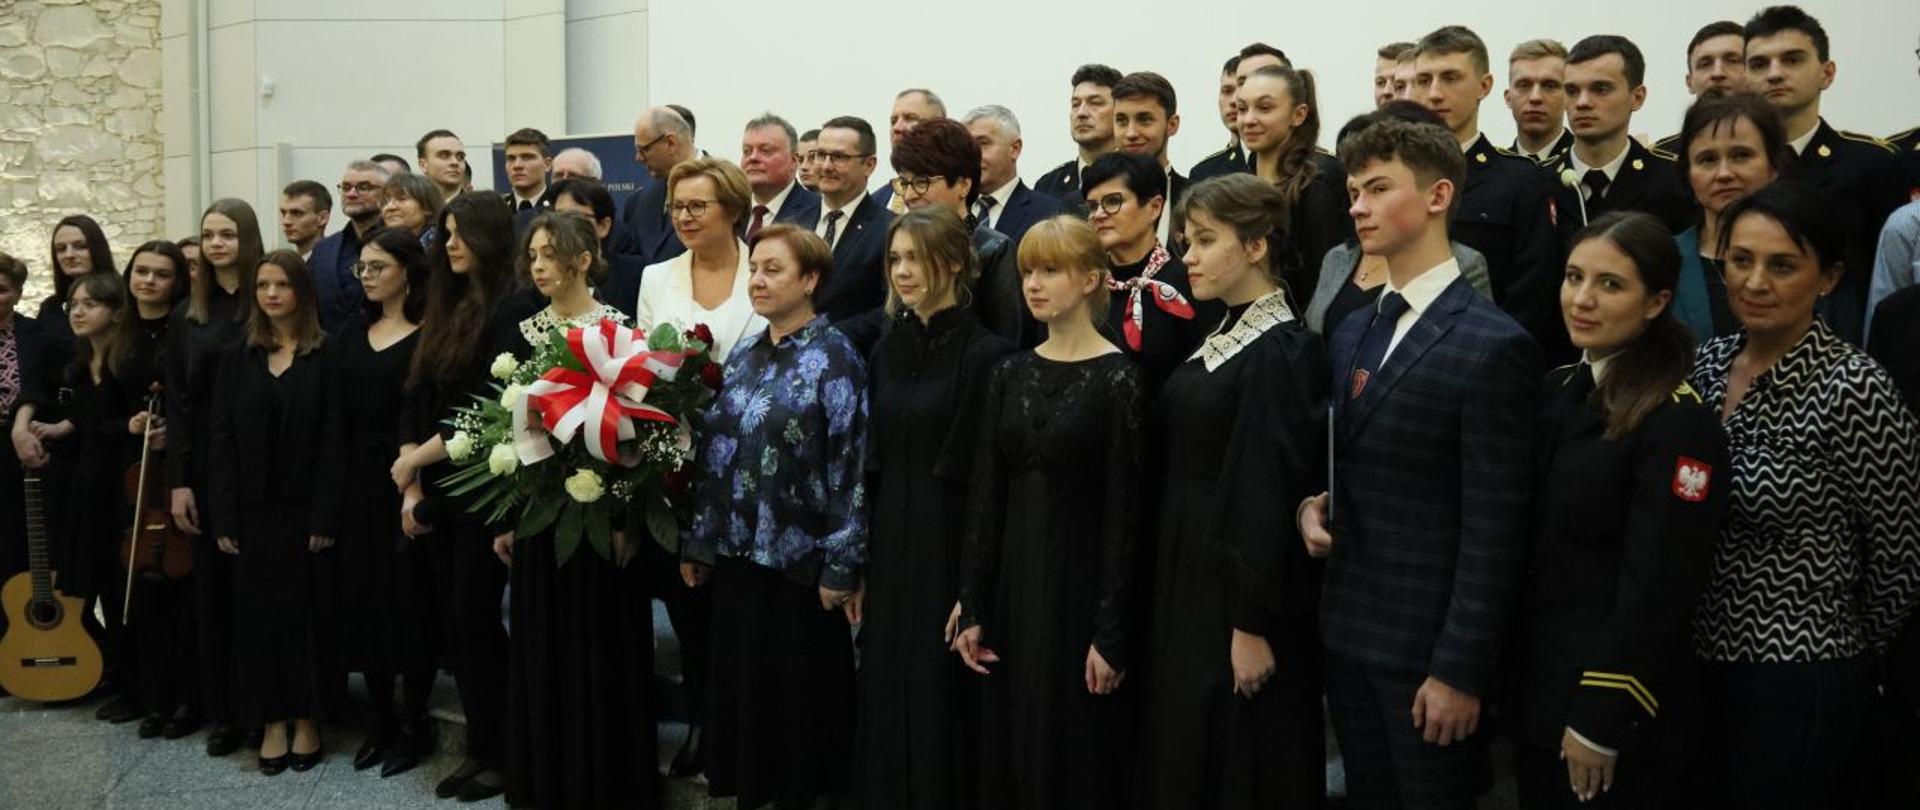 Grupowe zdjęcie uczestników i laureatów uroczystych obchodów 160. rocznicy Powstania Styczniowego w towarzystwie europosłanki Jadwigi Wiśniewskiej